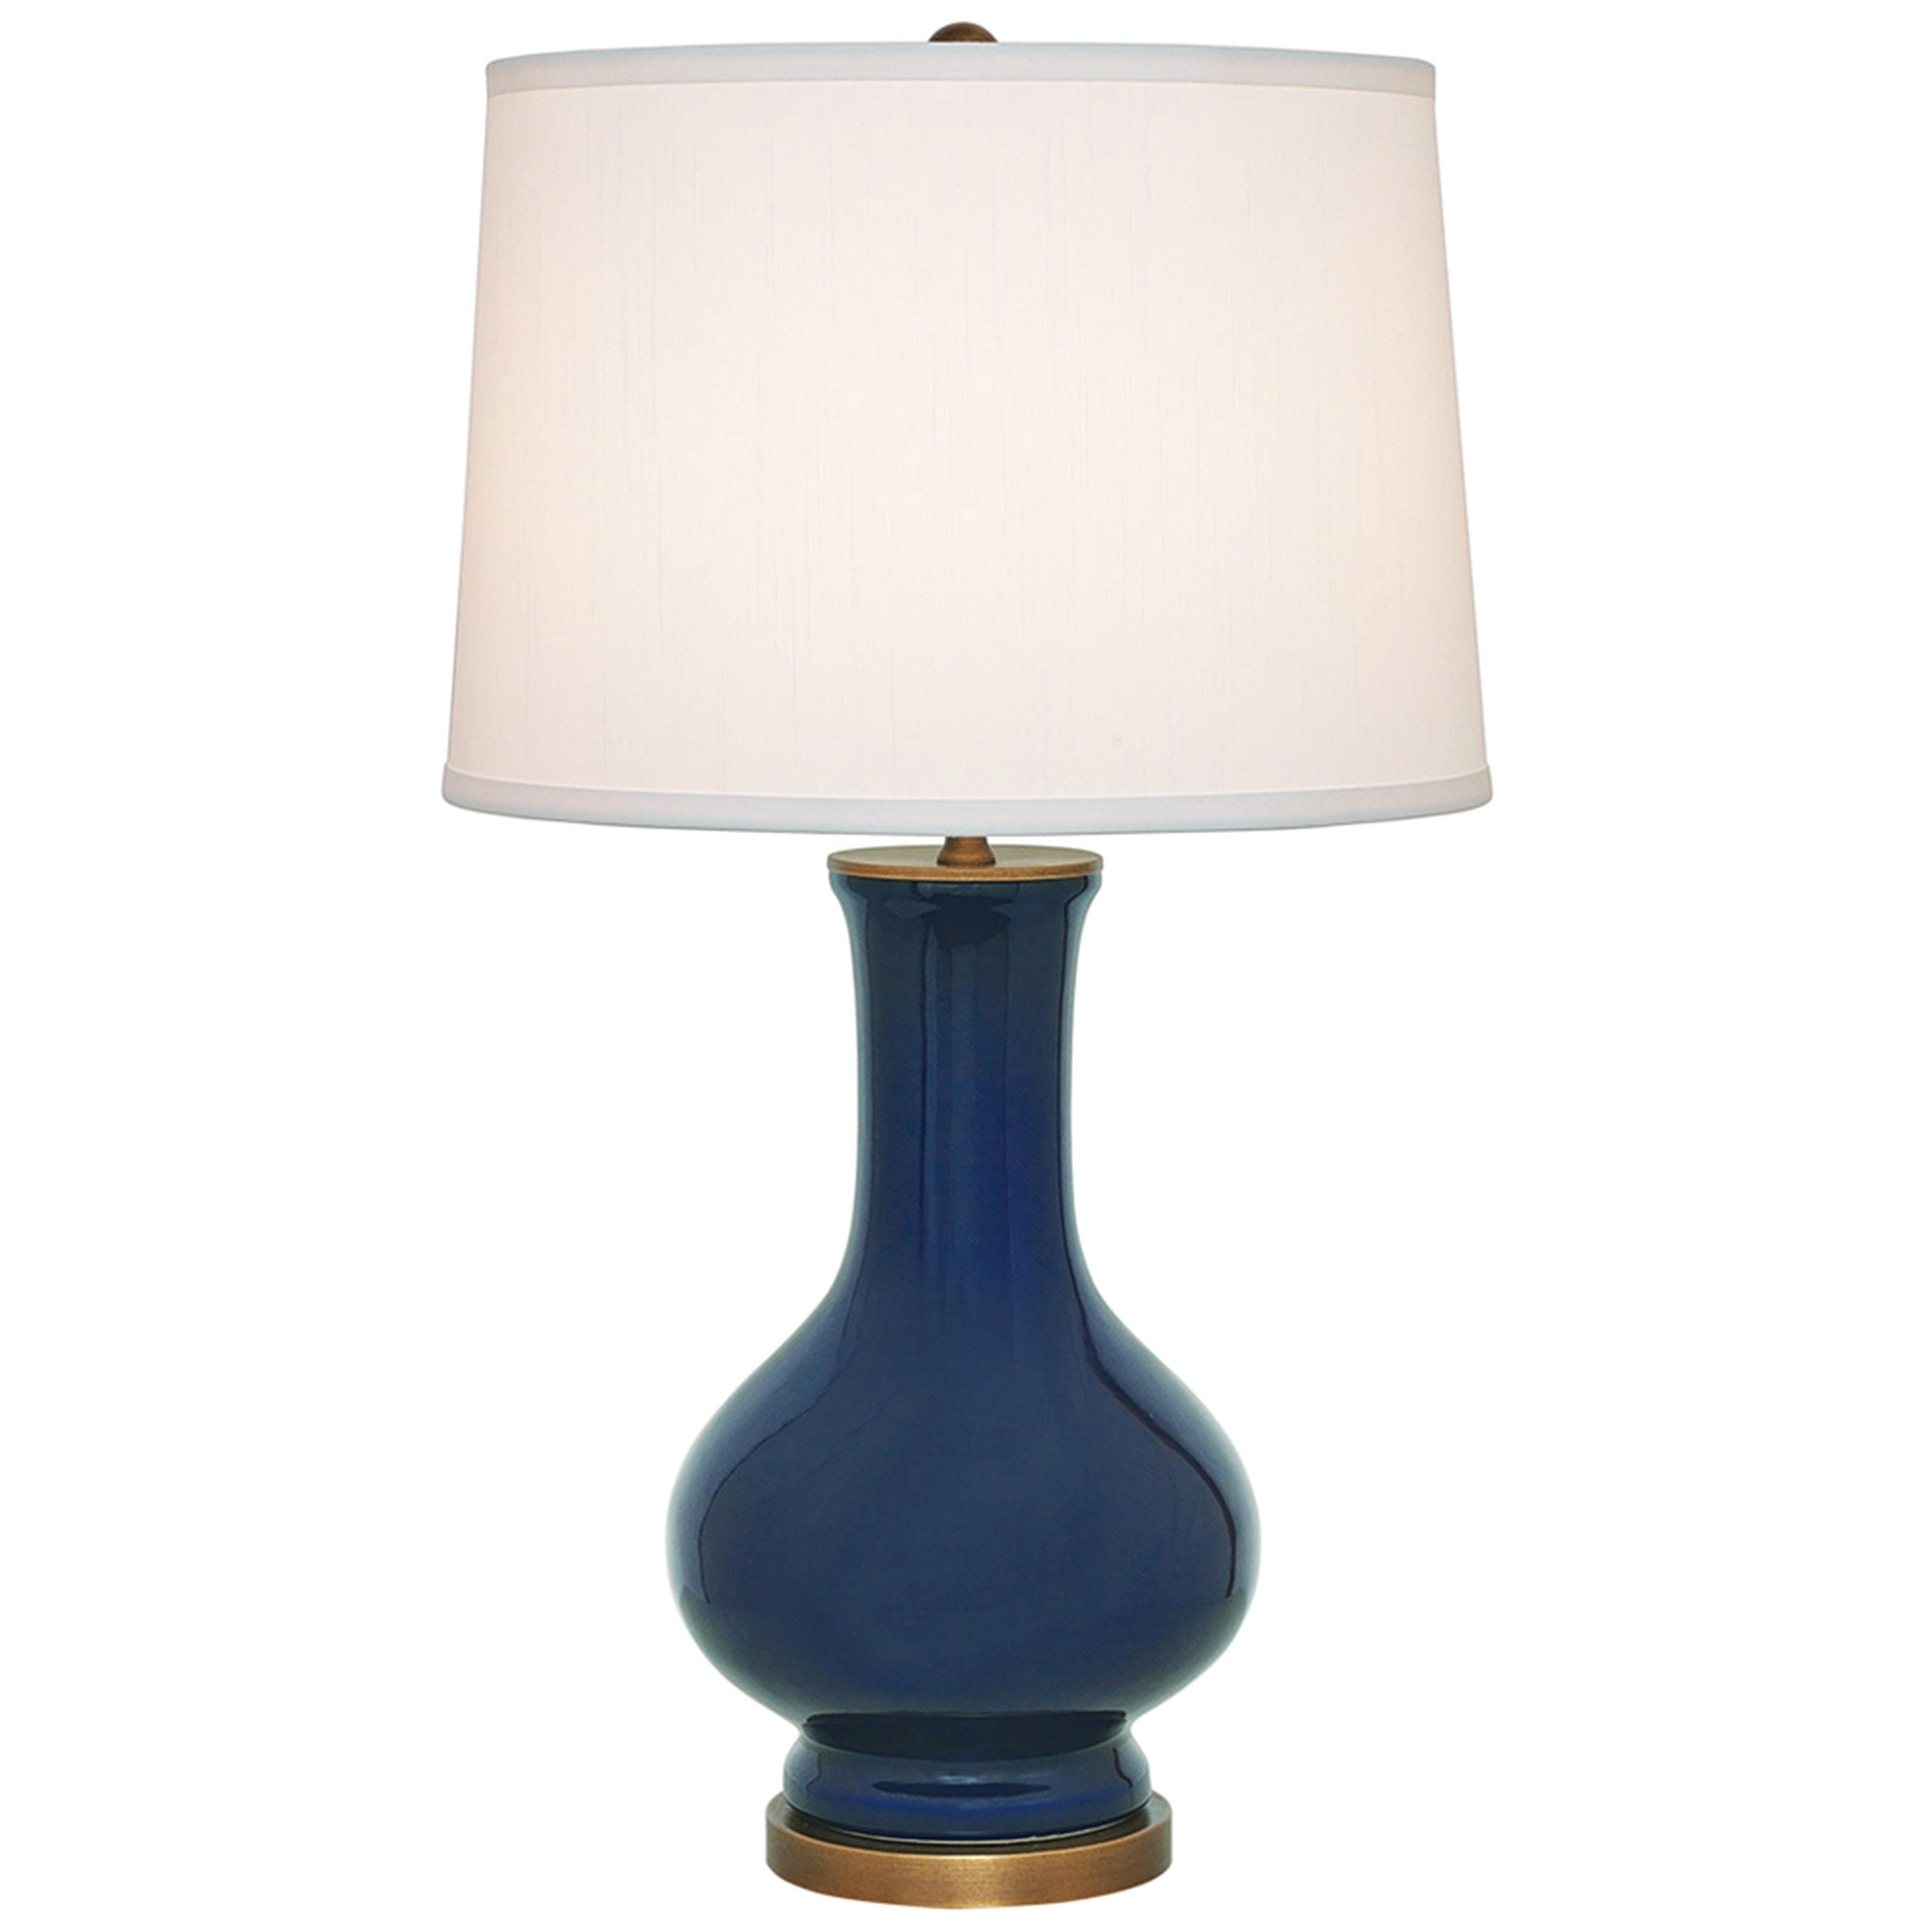 Port 68 Dorothy Cobalt Blue Porcelain Table Lamp - Style # 60P07 - Lamps Plus